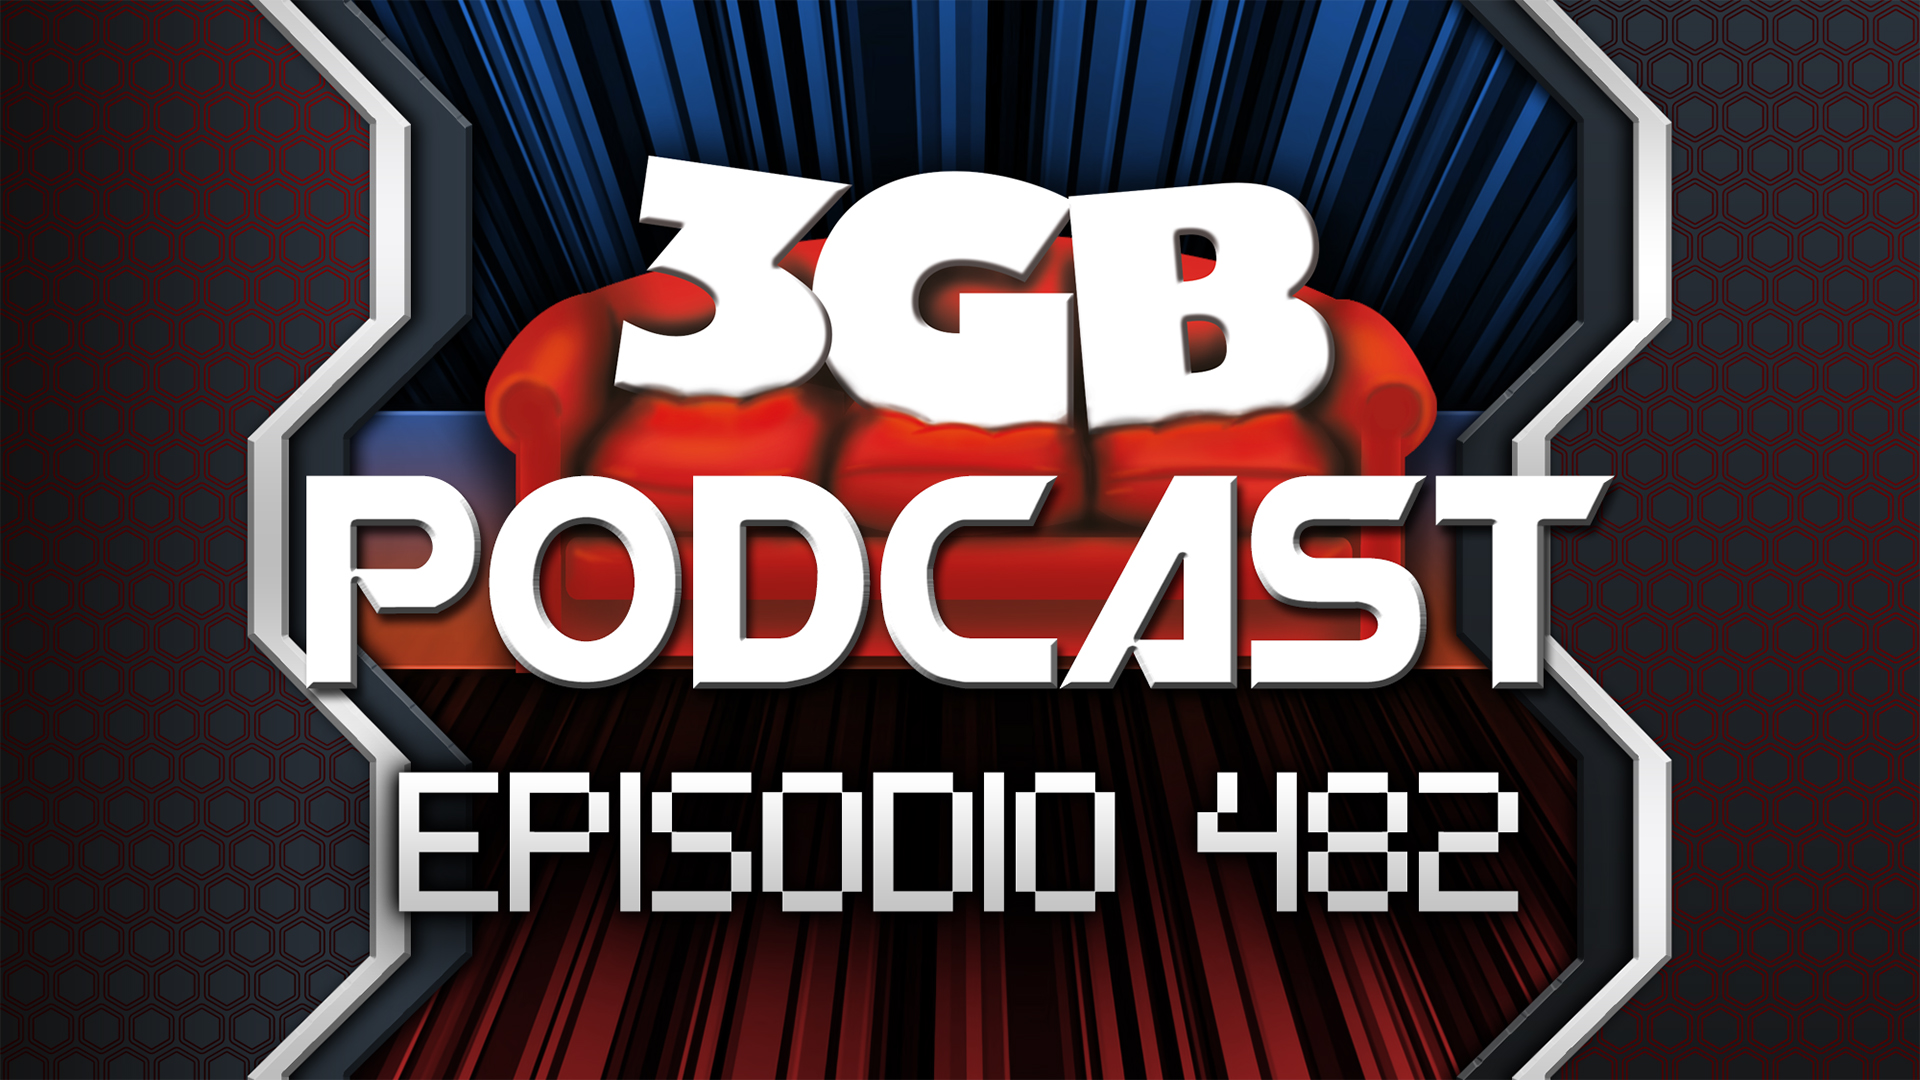 Podcast: Episodio 482, Cuando Falla el Retro